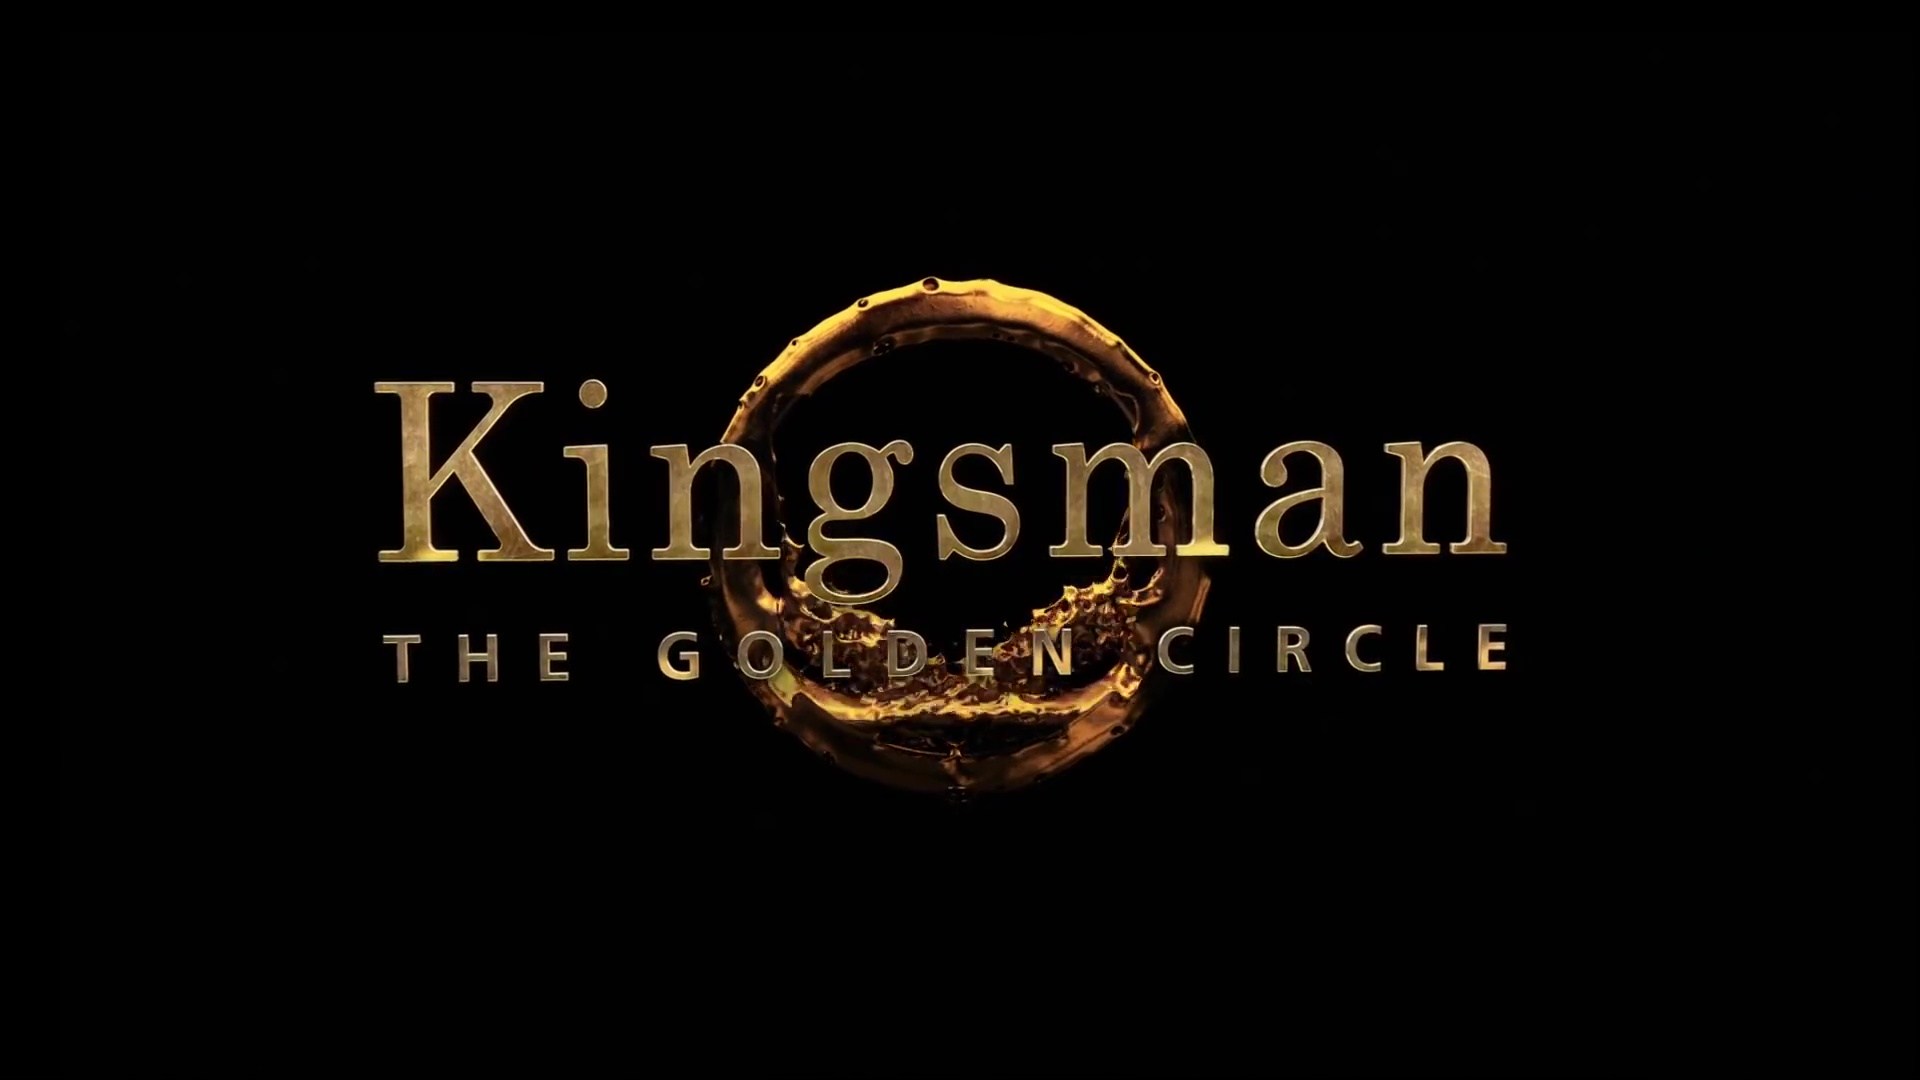 kingsman 2 watch puttlocker online free